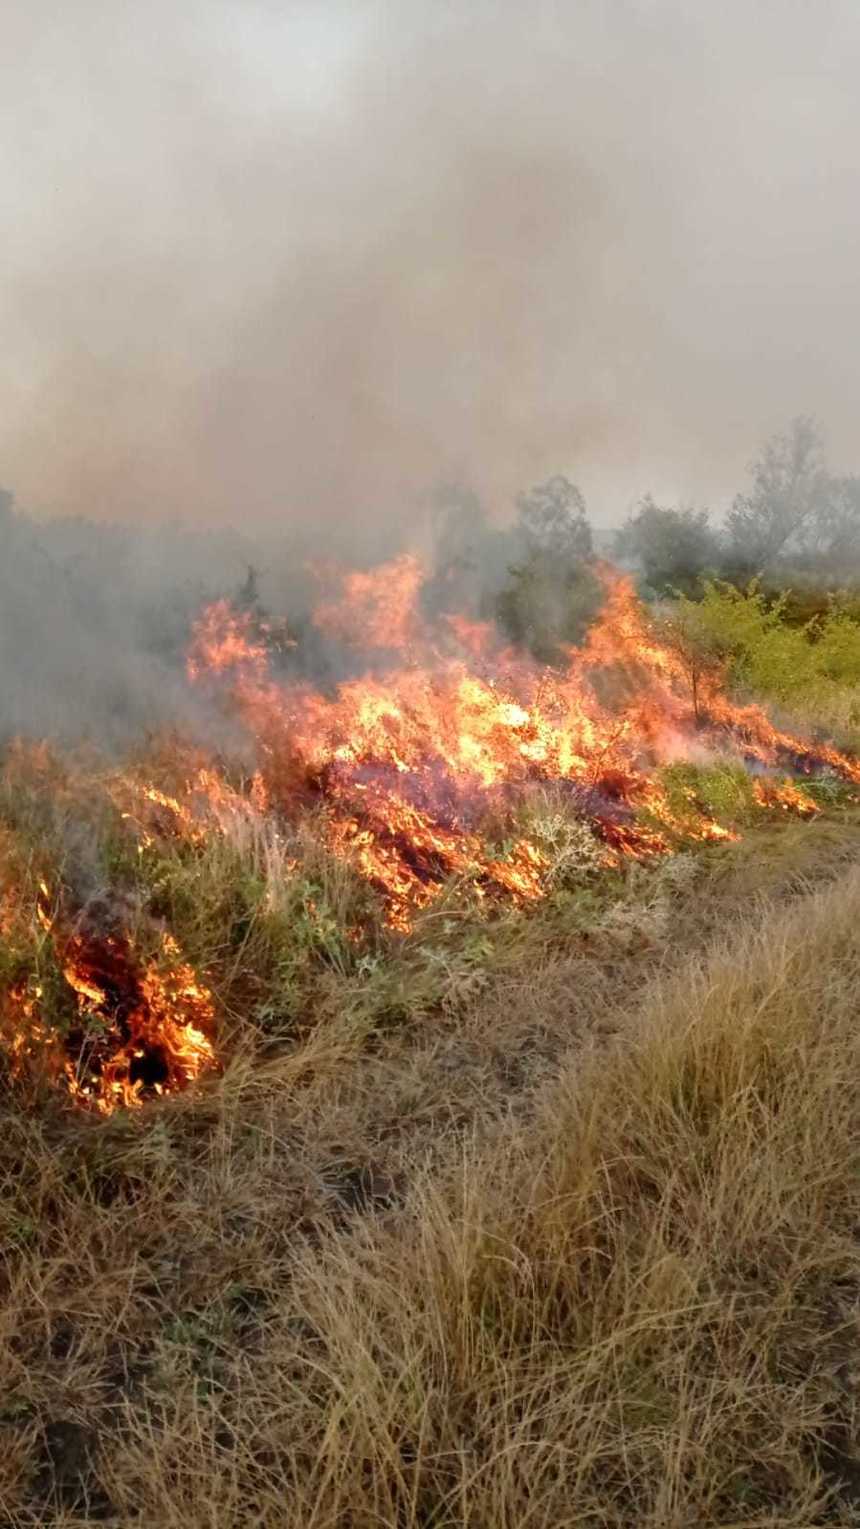 Mehedinţi: Incendiul de vegetaţie extins la gospodării a fost stins / Au fost afectate patru case, 17 anexe gospodăreşti, o maşină, cimitirul şi 2 hectare de litieră

